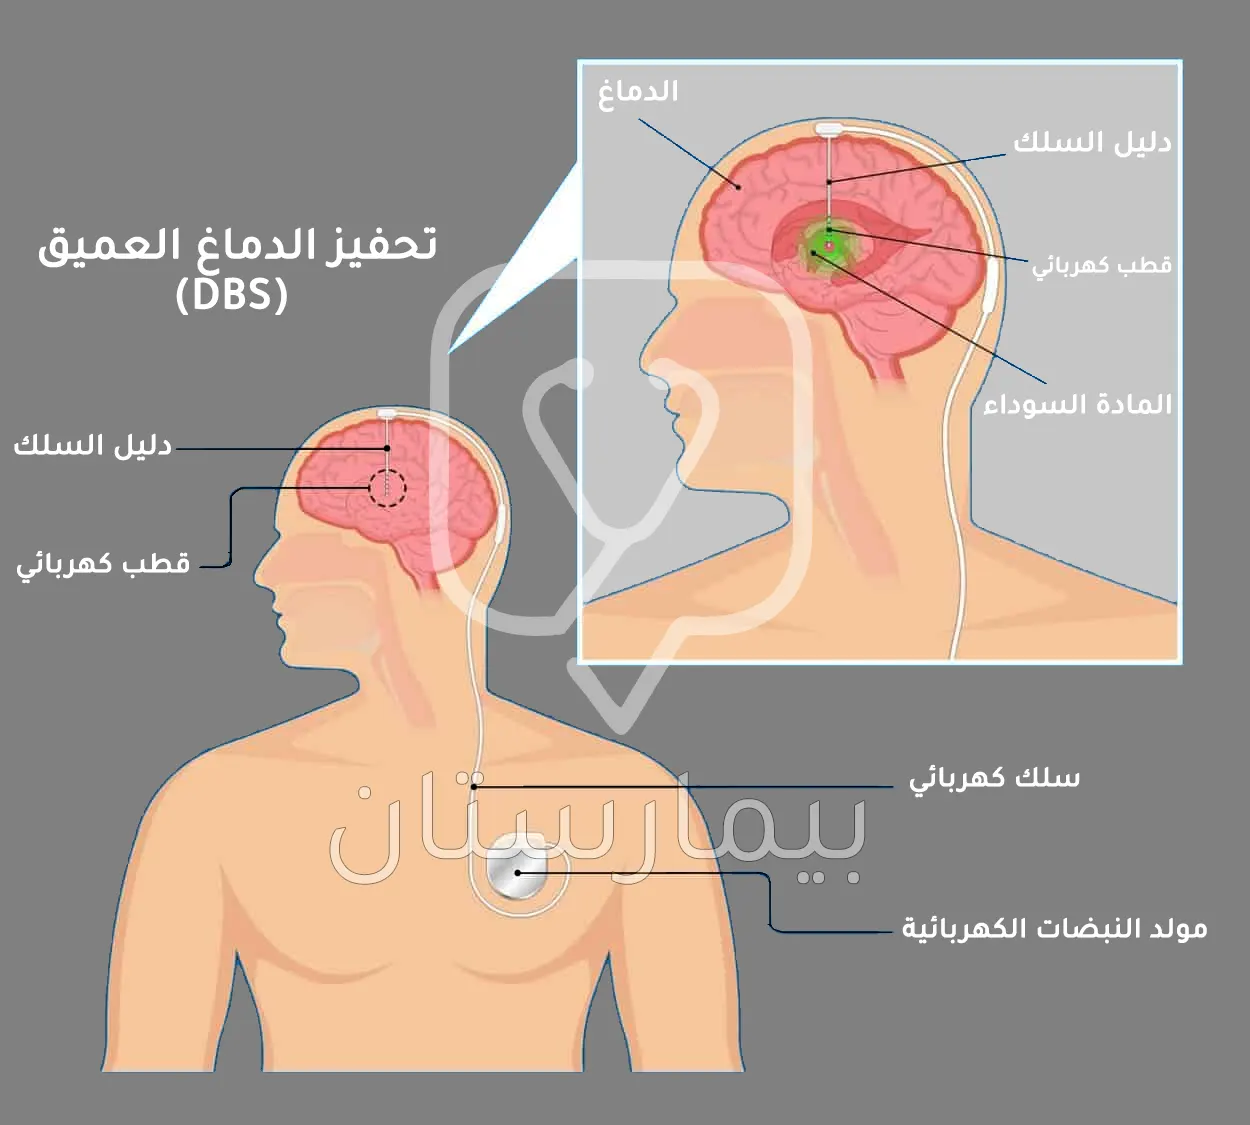 صورة تتحدث عن علاج مرض باركنسون عبر تحفيز الدماغ العميق